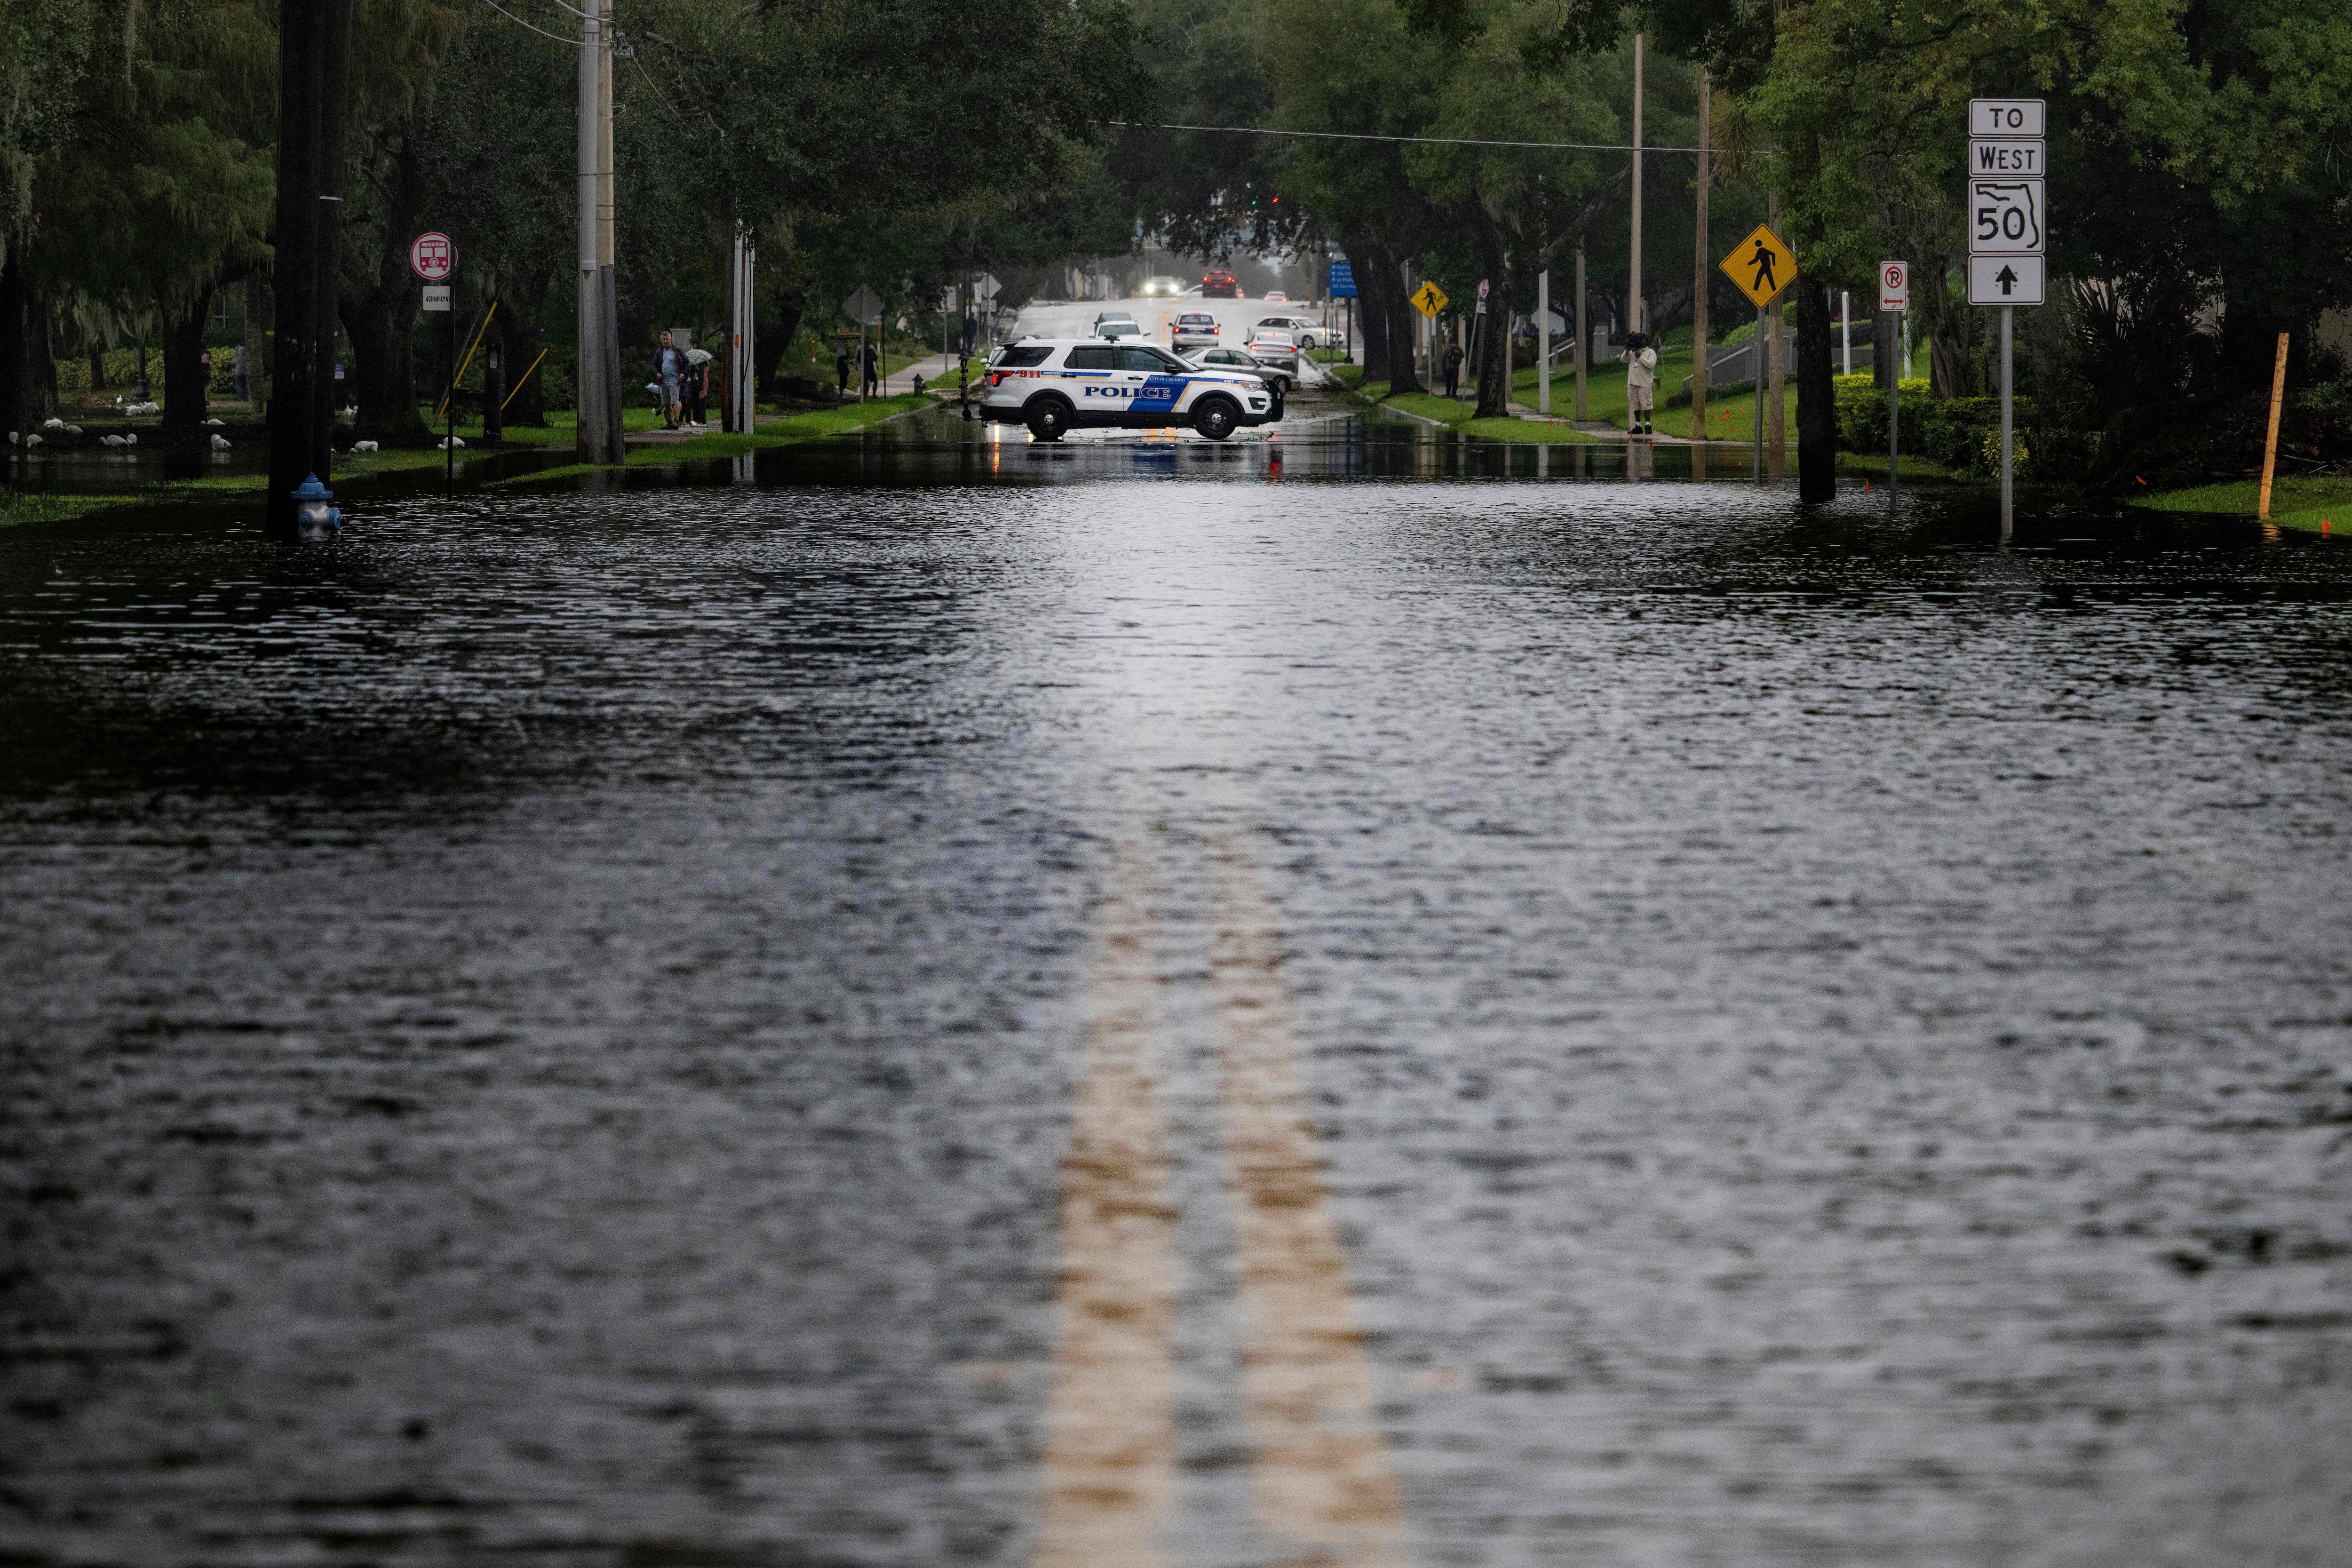 Un coche de policía bloquea una calle inundada después del huracán Ian en Orlando, Florida, el 29 de septiembre de 2022. (Foto de Jim WATSON / AFP)